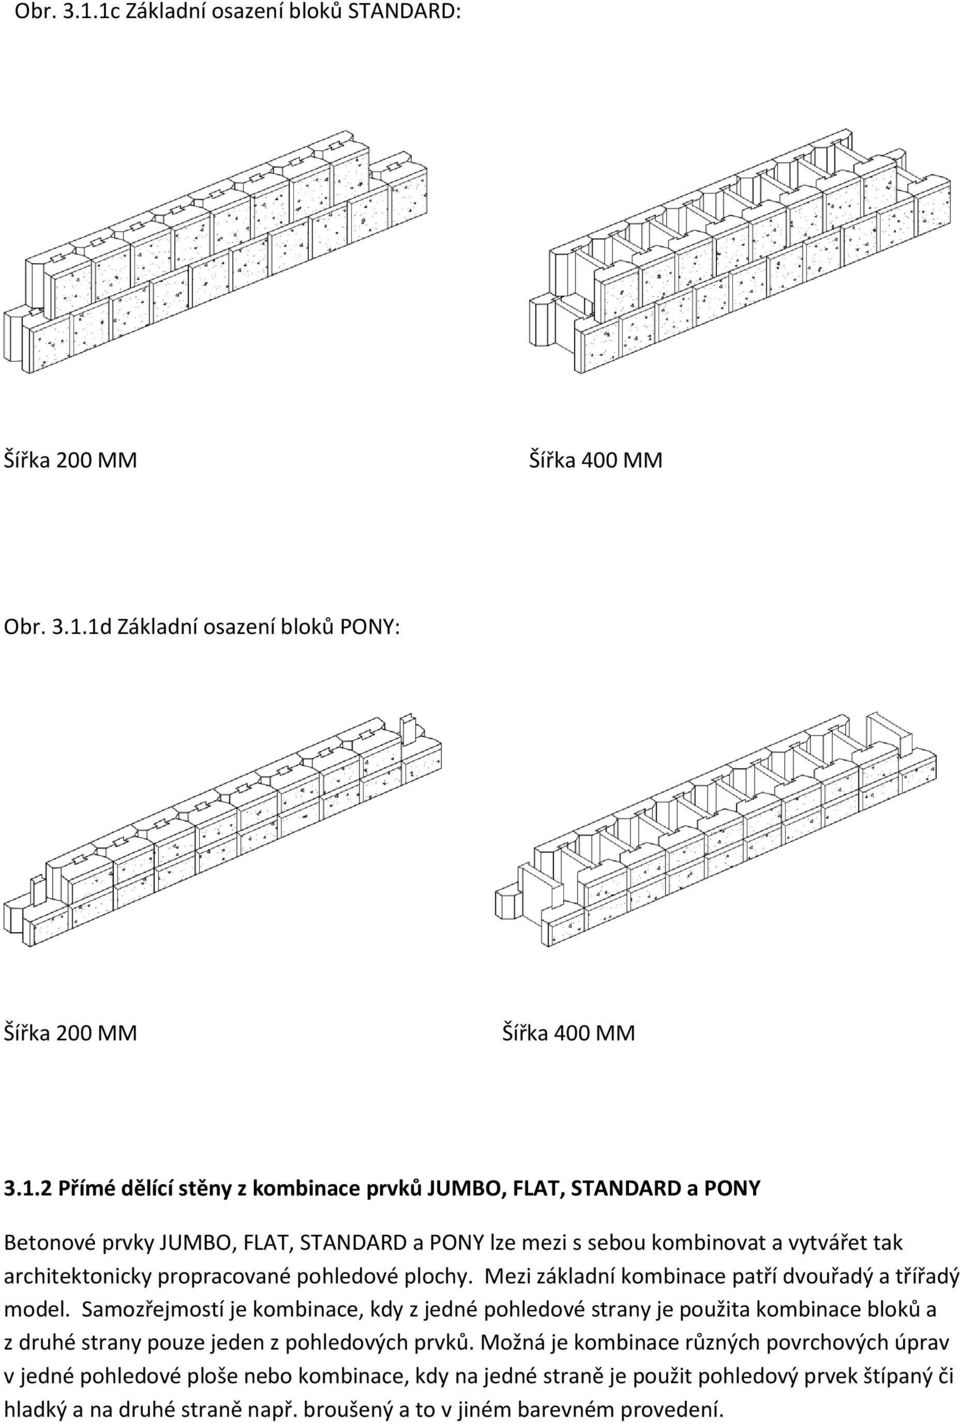 PONY Betonové prvky JUMBO, FLAT, STANDARD a PONY lze mezi s sebou kombinovat a vytvářet tak architektonicky propracované pohledové plochy.